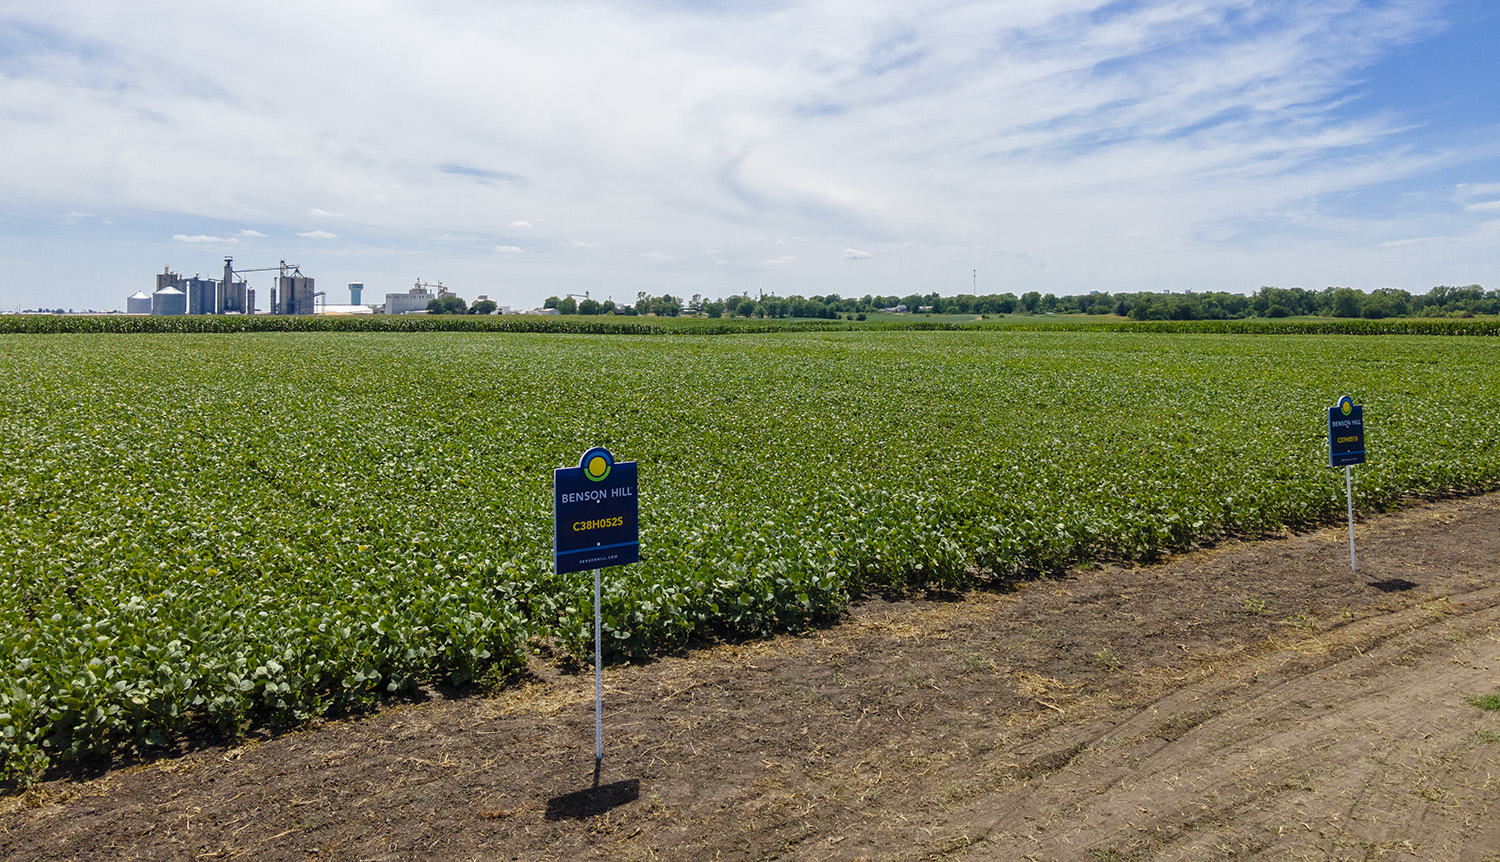 Soybean field in Iowa